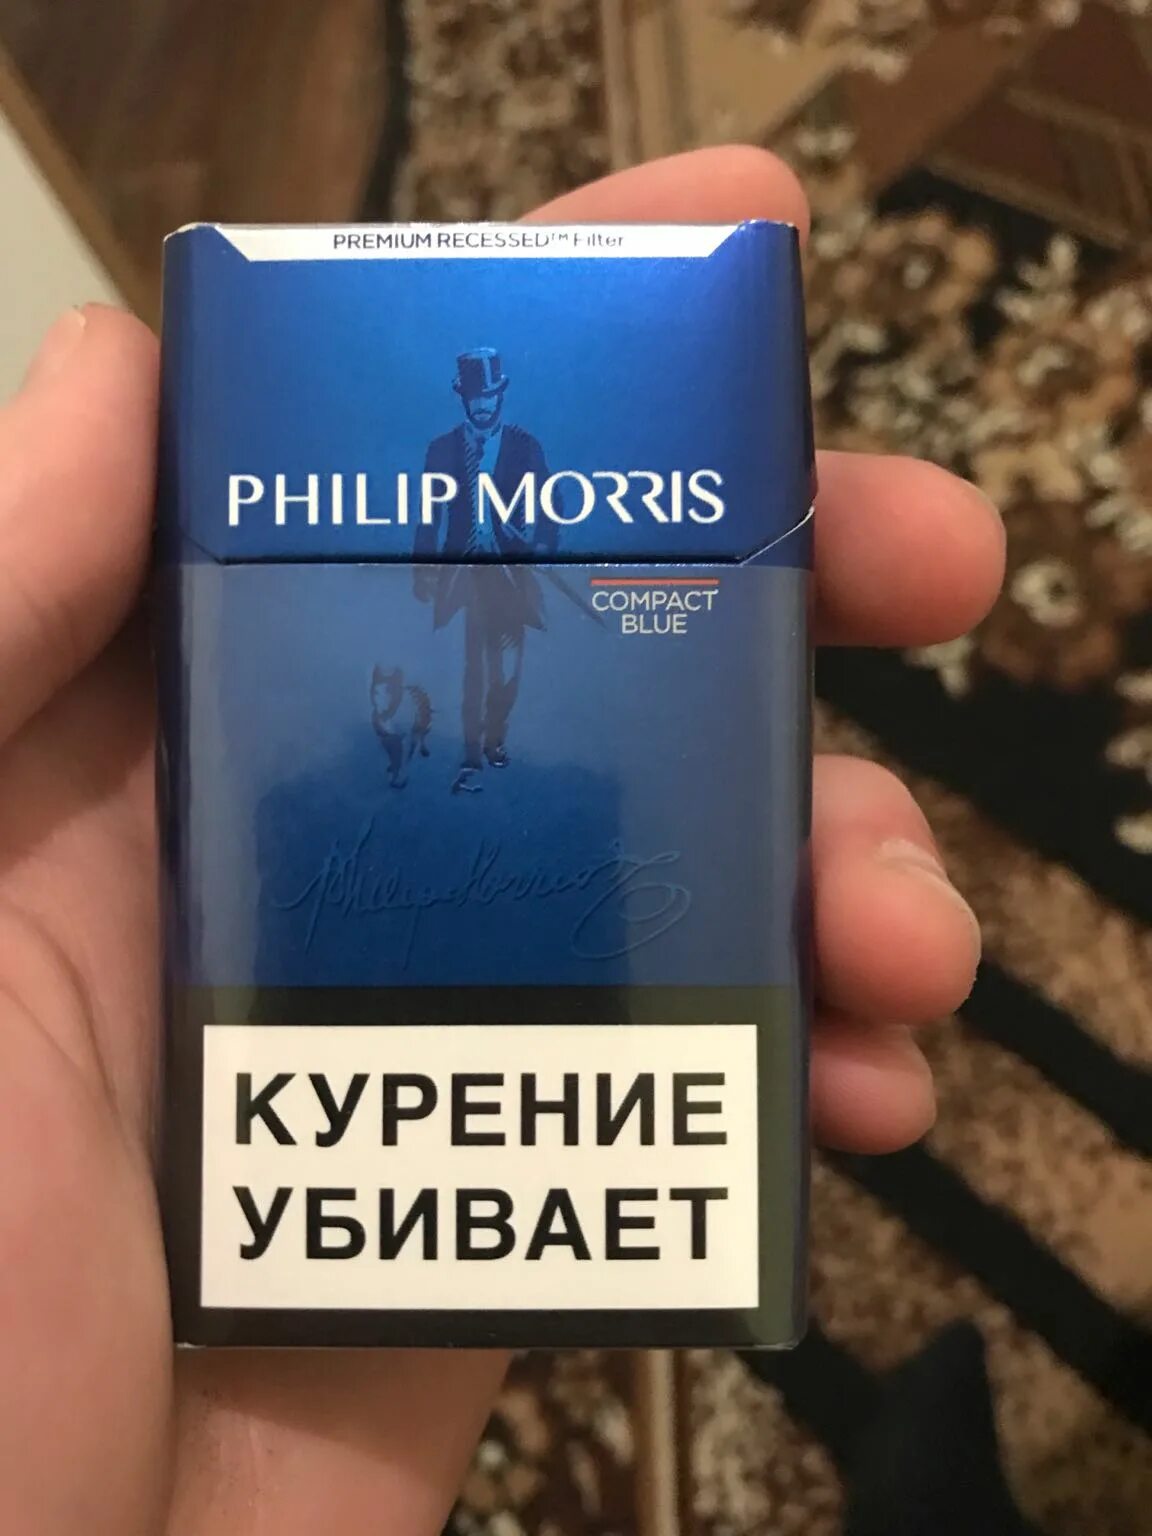 Филипс Морис компакт Блю. Сигареты с фильтром "Philip Morris Compact Blue".